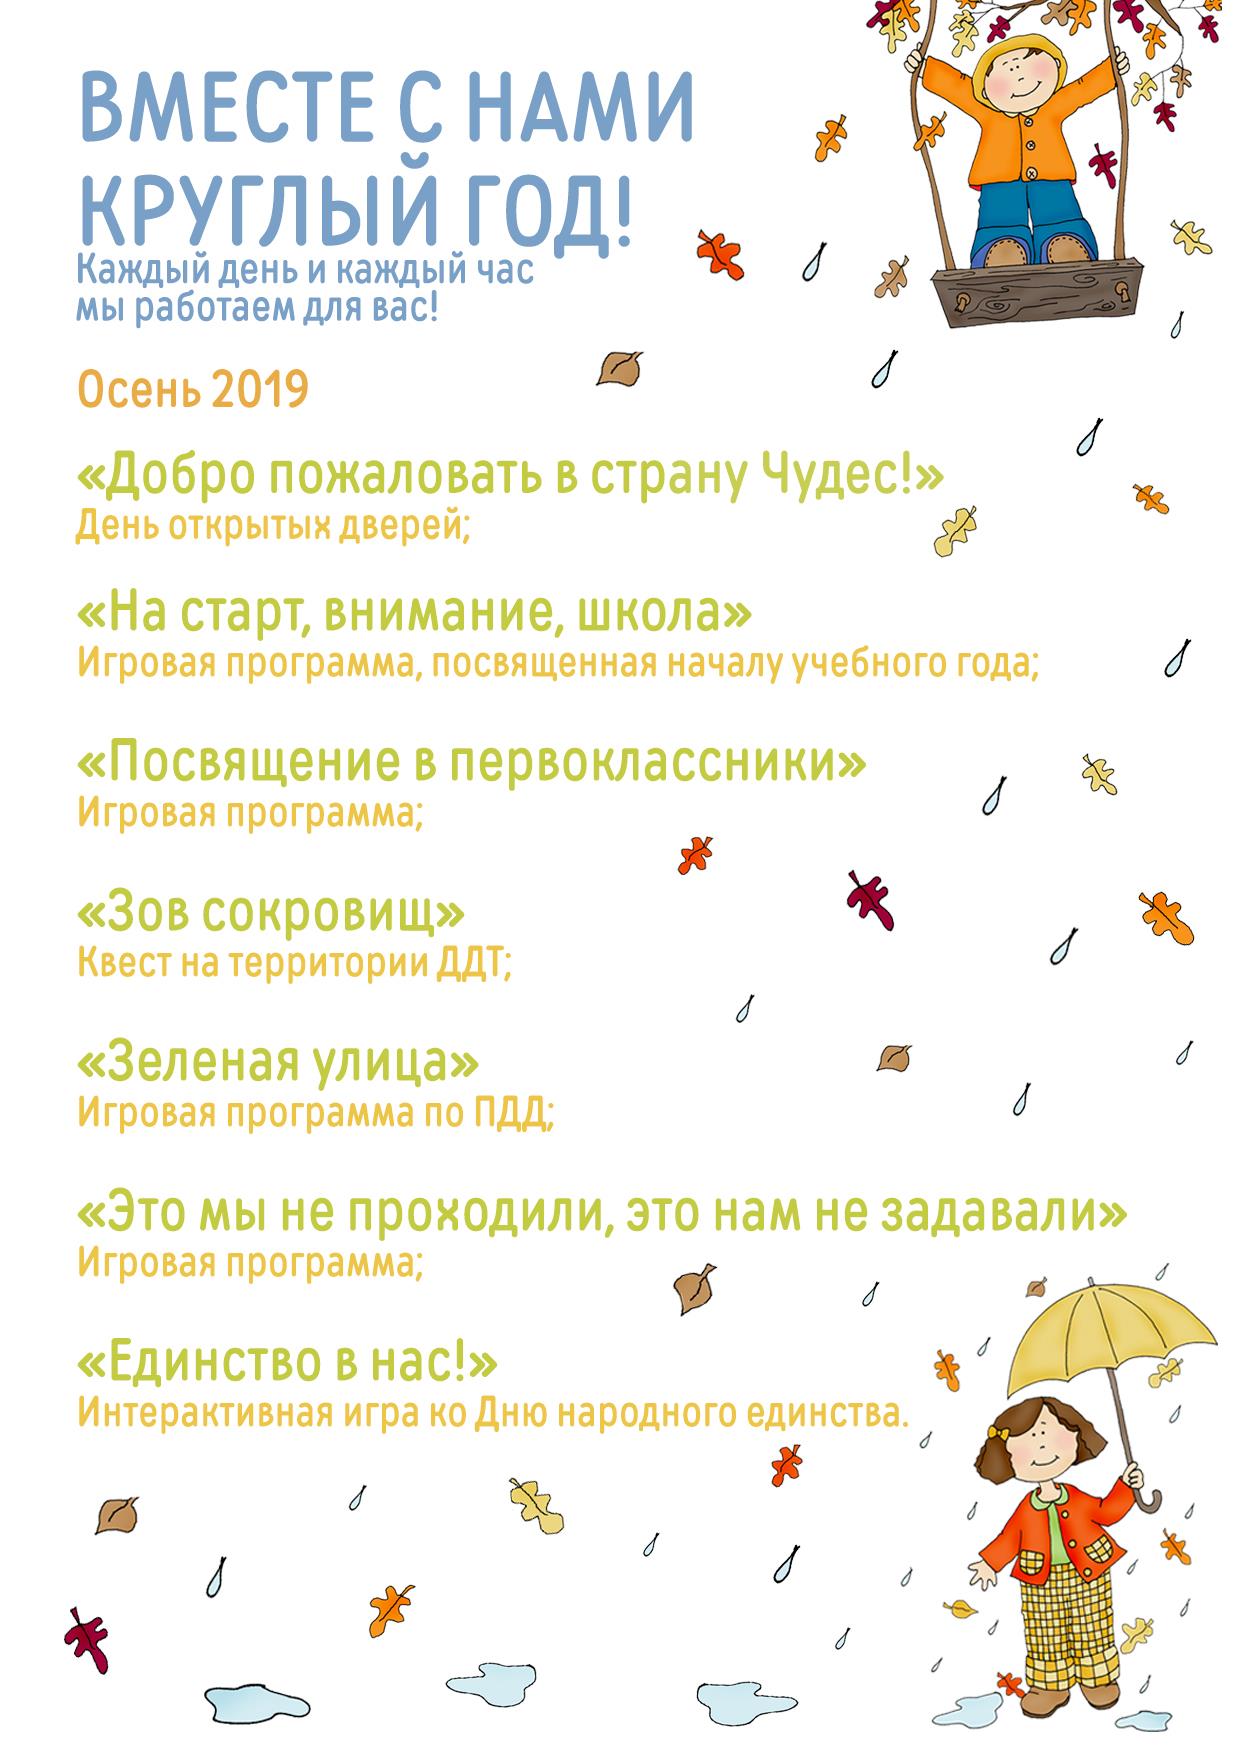 autumn 2019